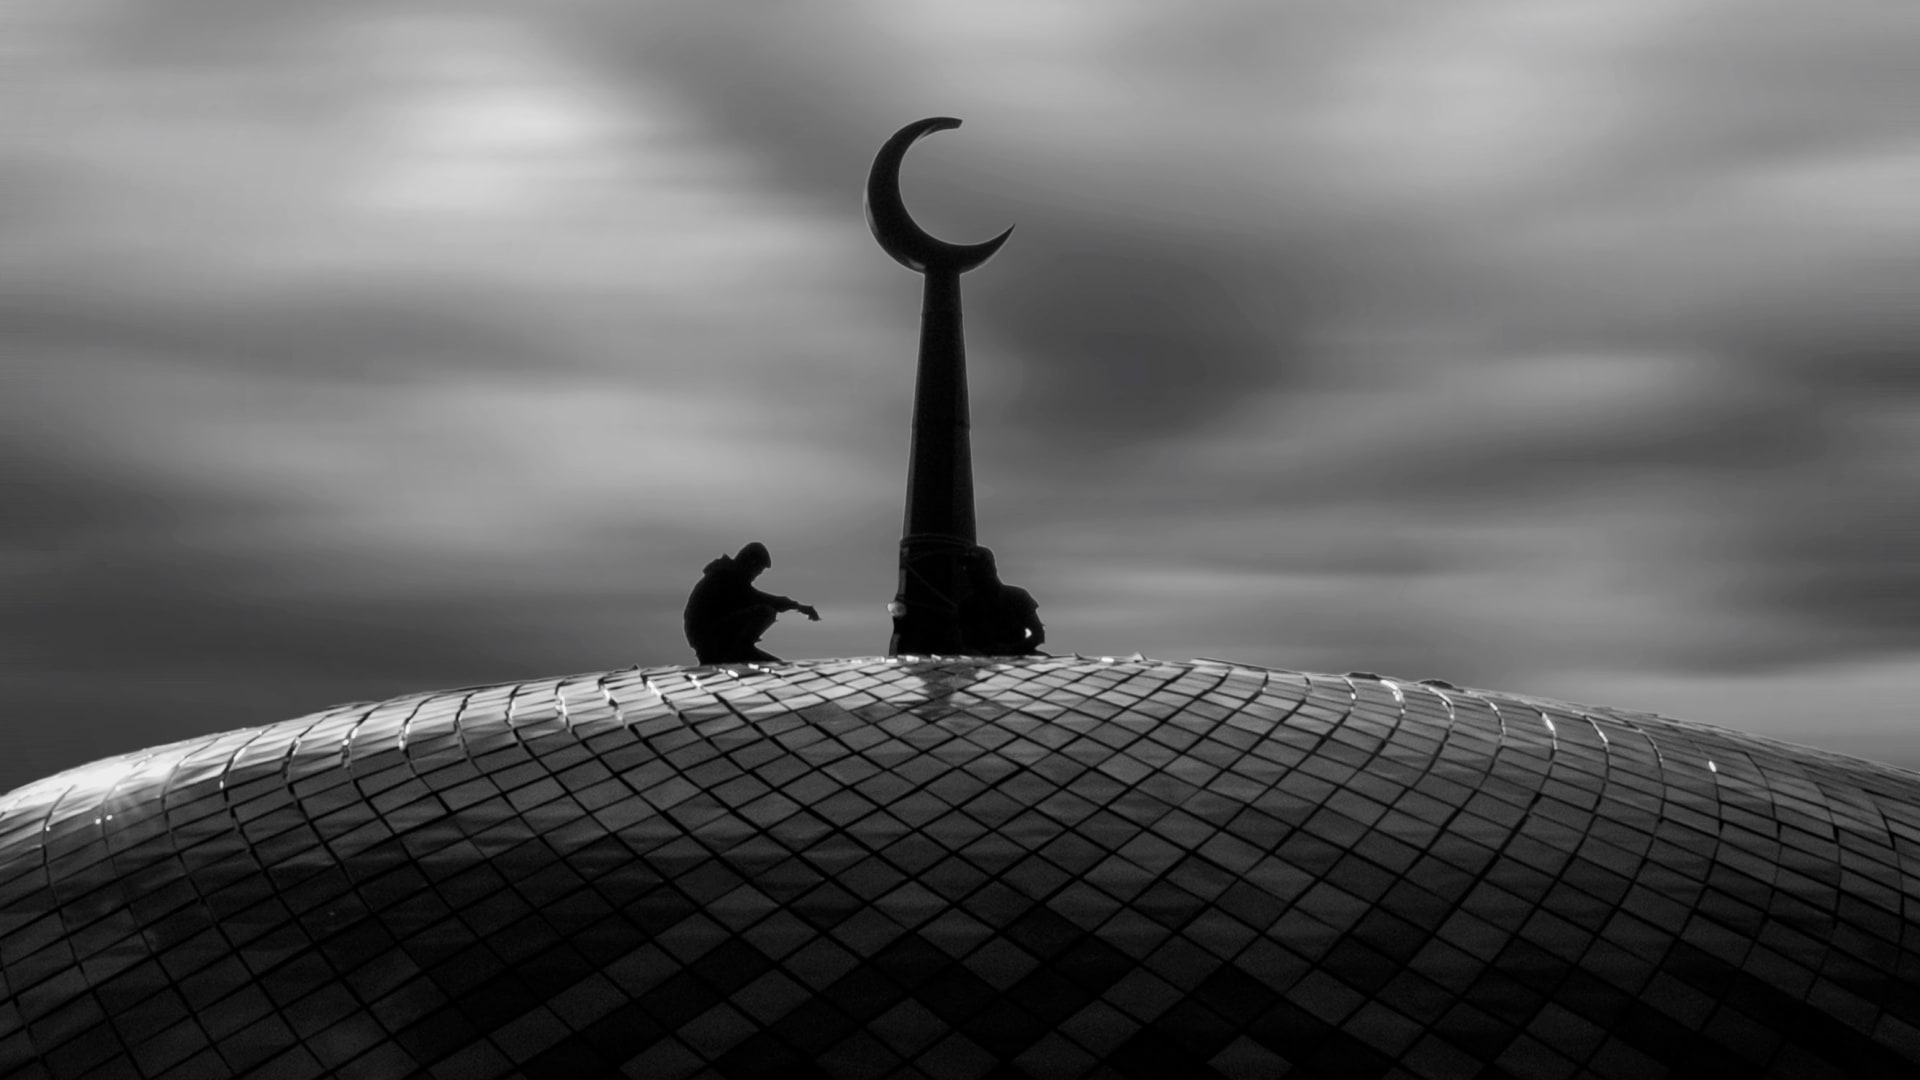 مسجد في استراحة في باوينن، اندونيسيا، بعدسة المصور الاندونيسي ديكي أديتيا.